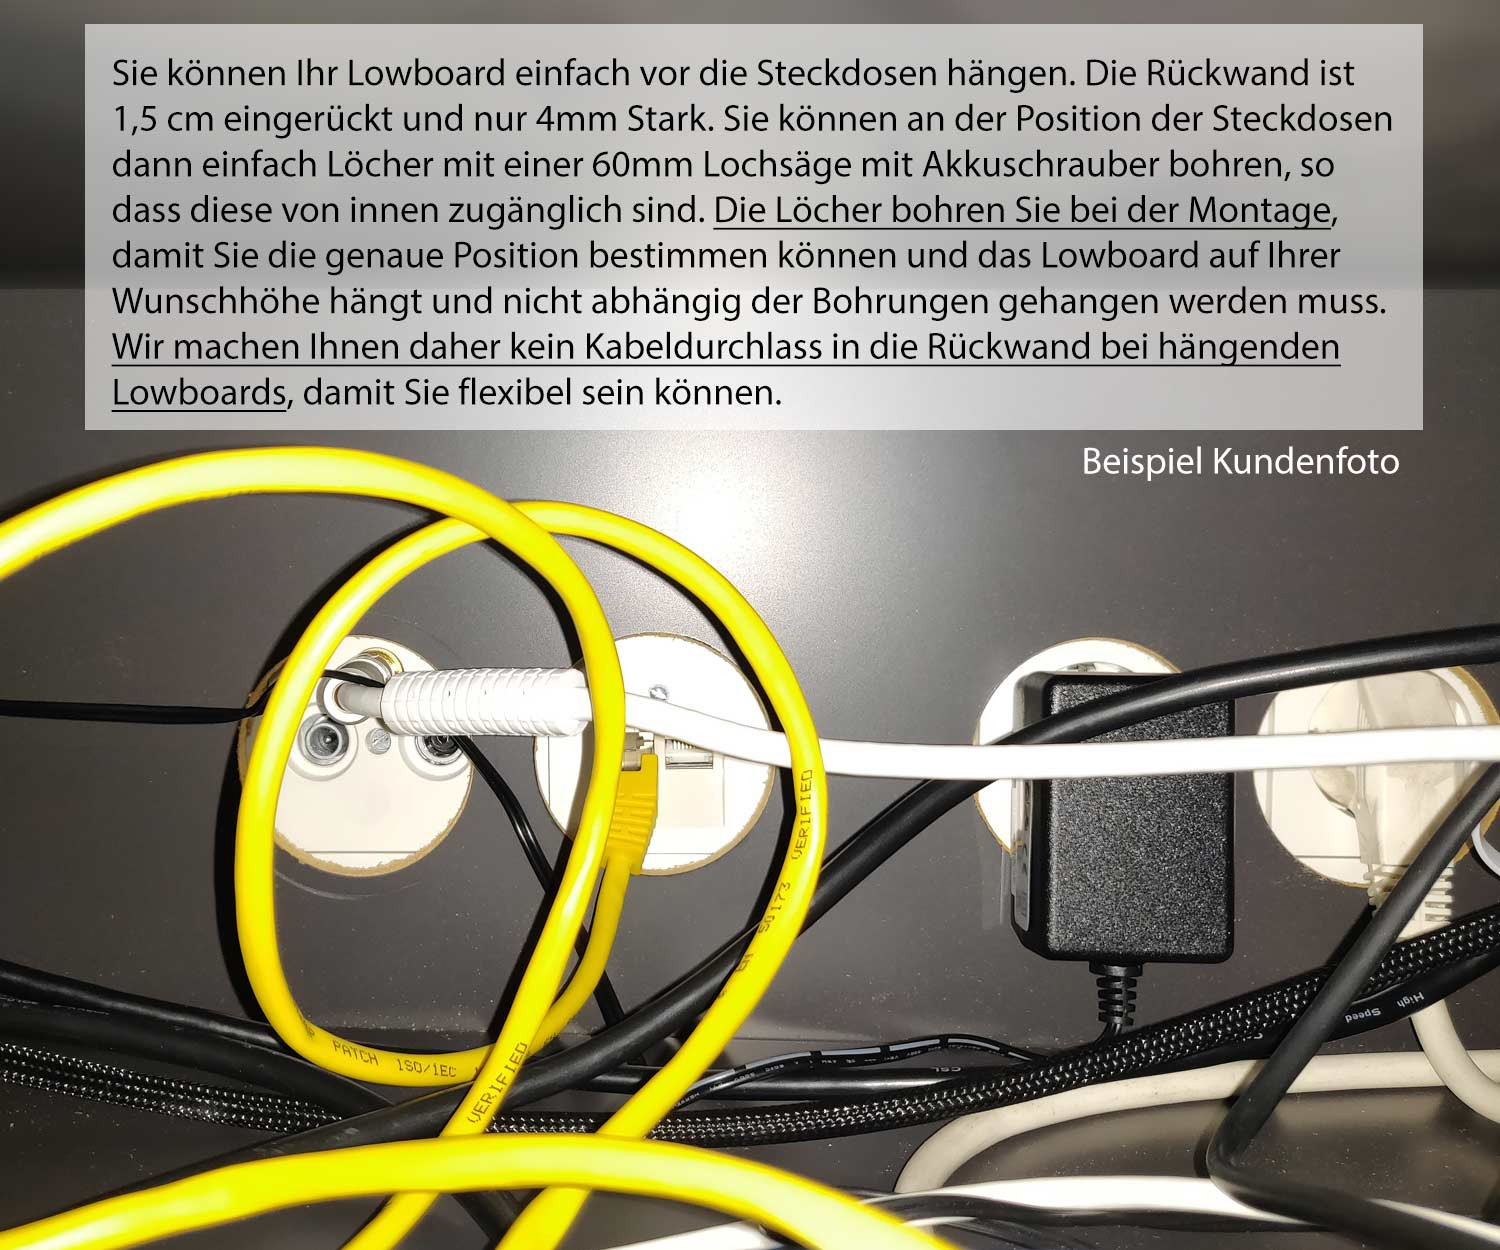 Hängendes Design Lowboard Kundenfoto Kabeldurchlässe mit Steckdosen verkabelt